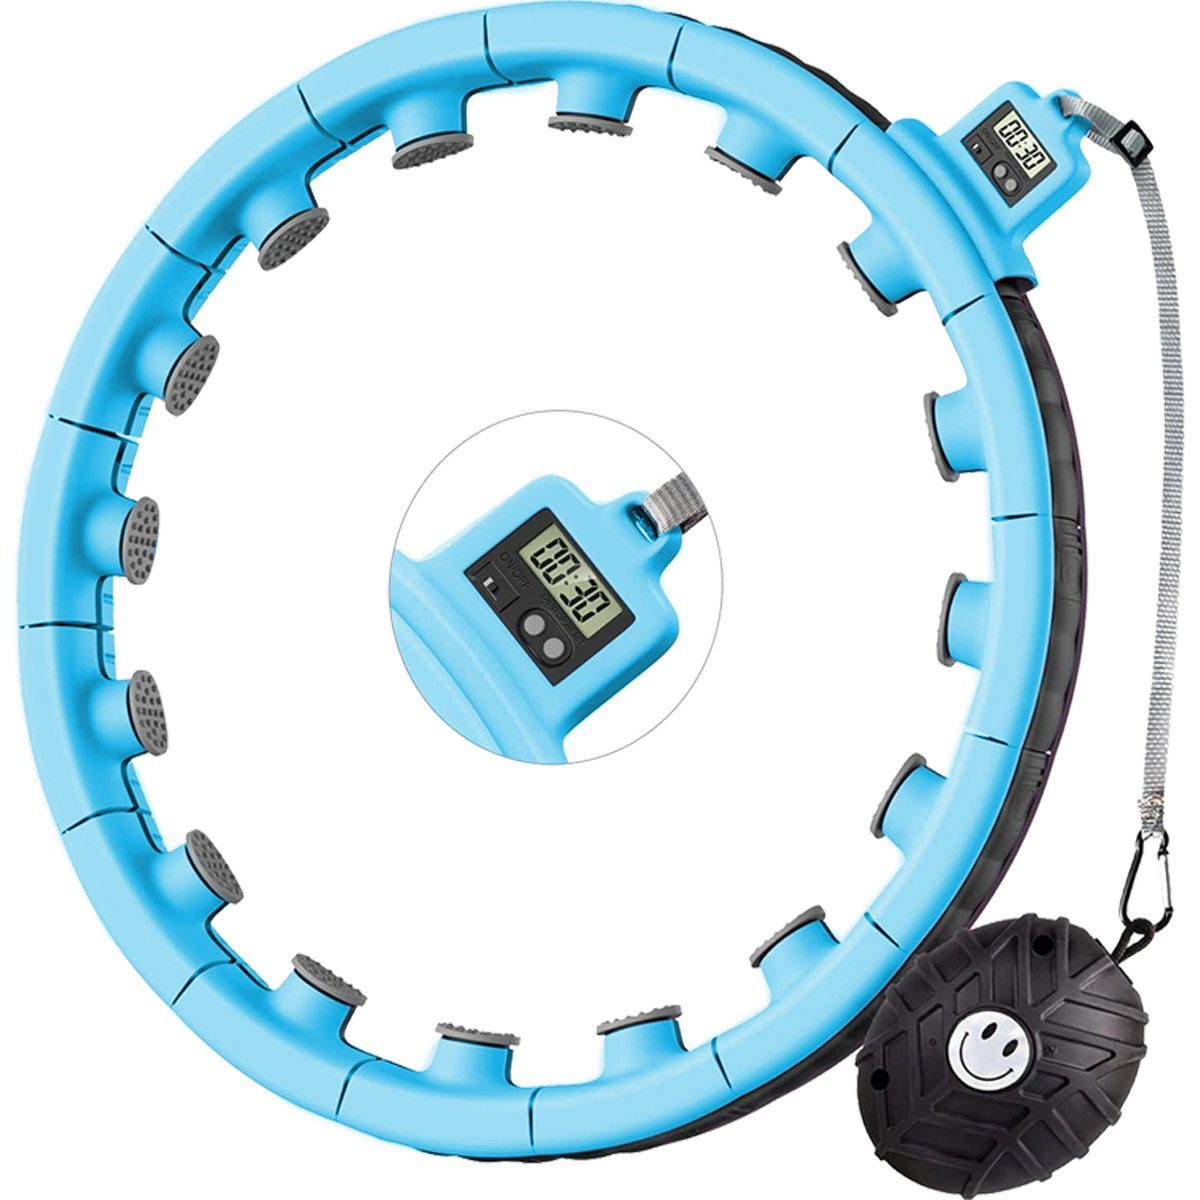 Hula-Hoop-Reifen Fitness-Reifen, beschwerter mit Hula Hoop, Hula-Hoop-Reifen, Smart Abnehmbar blau LEIGO Kugel